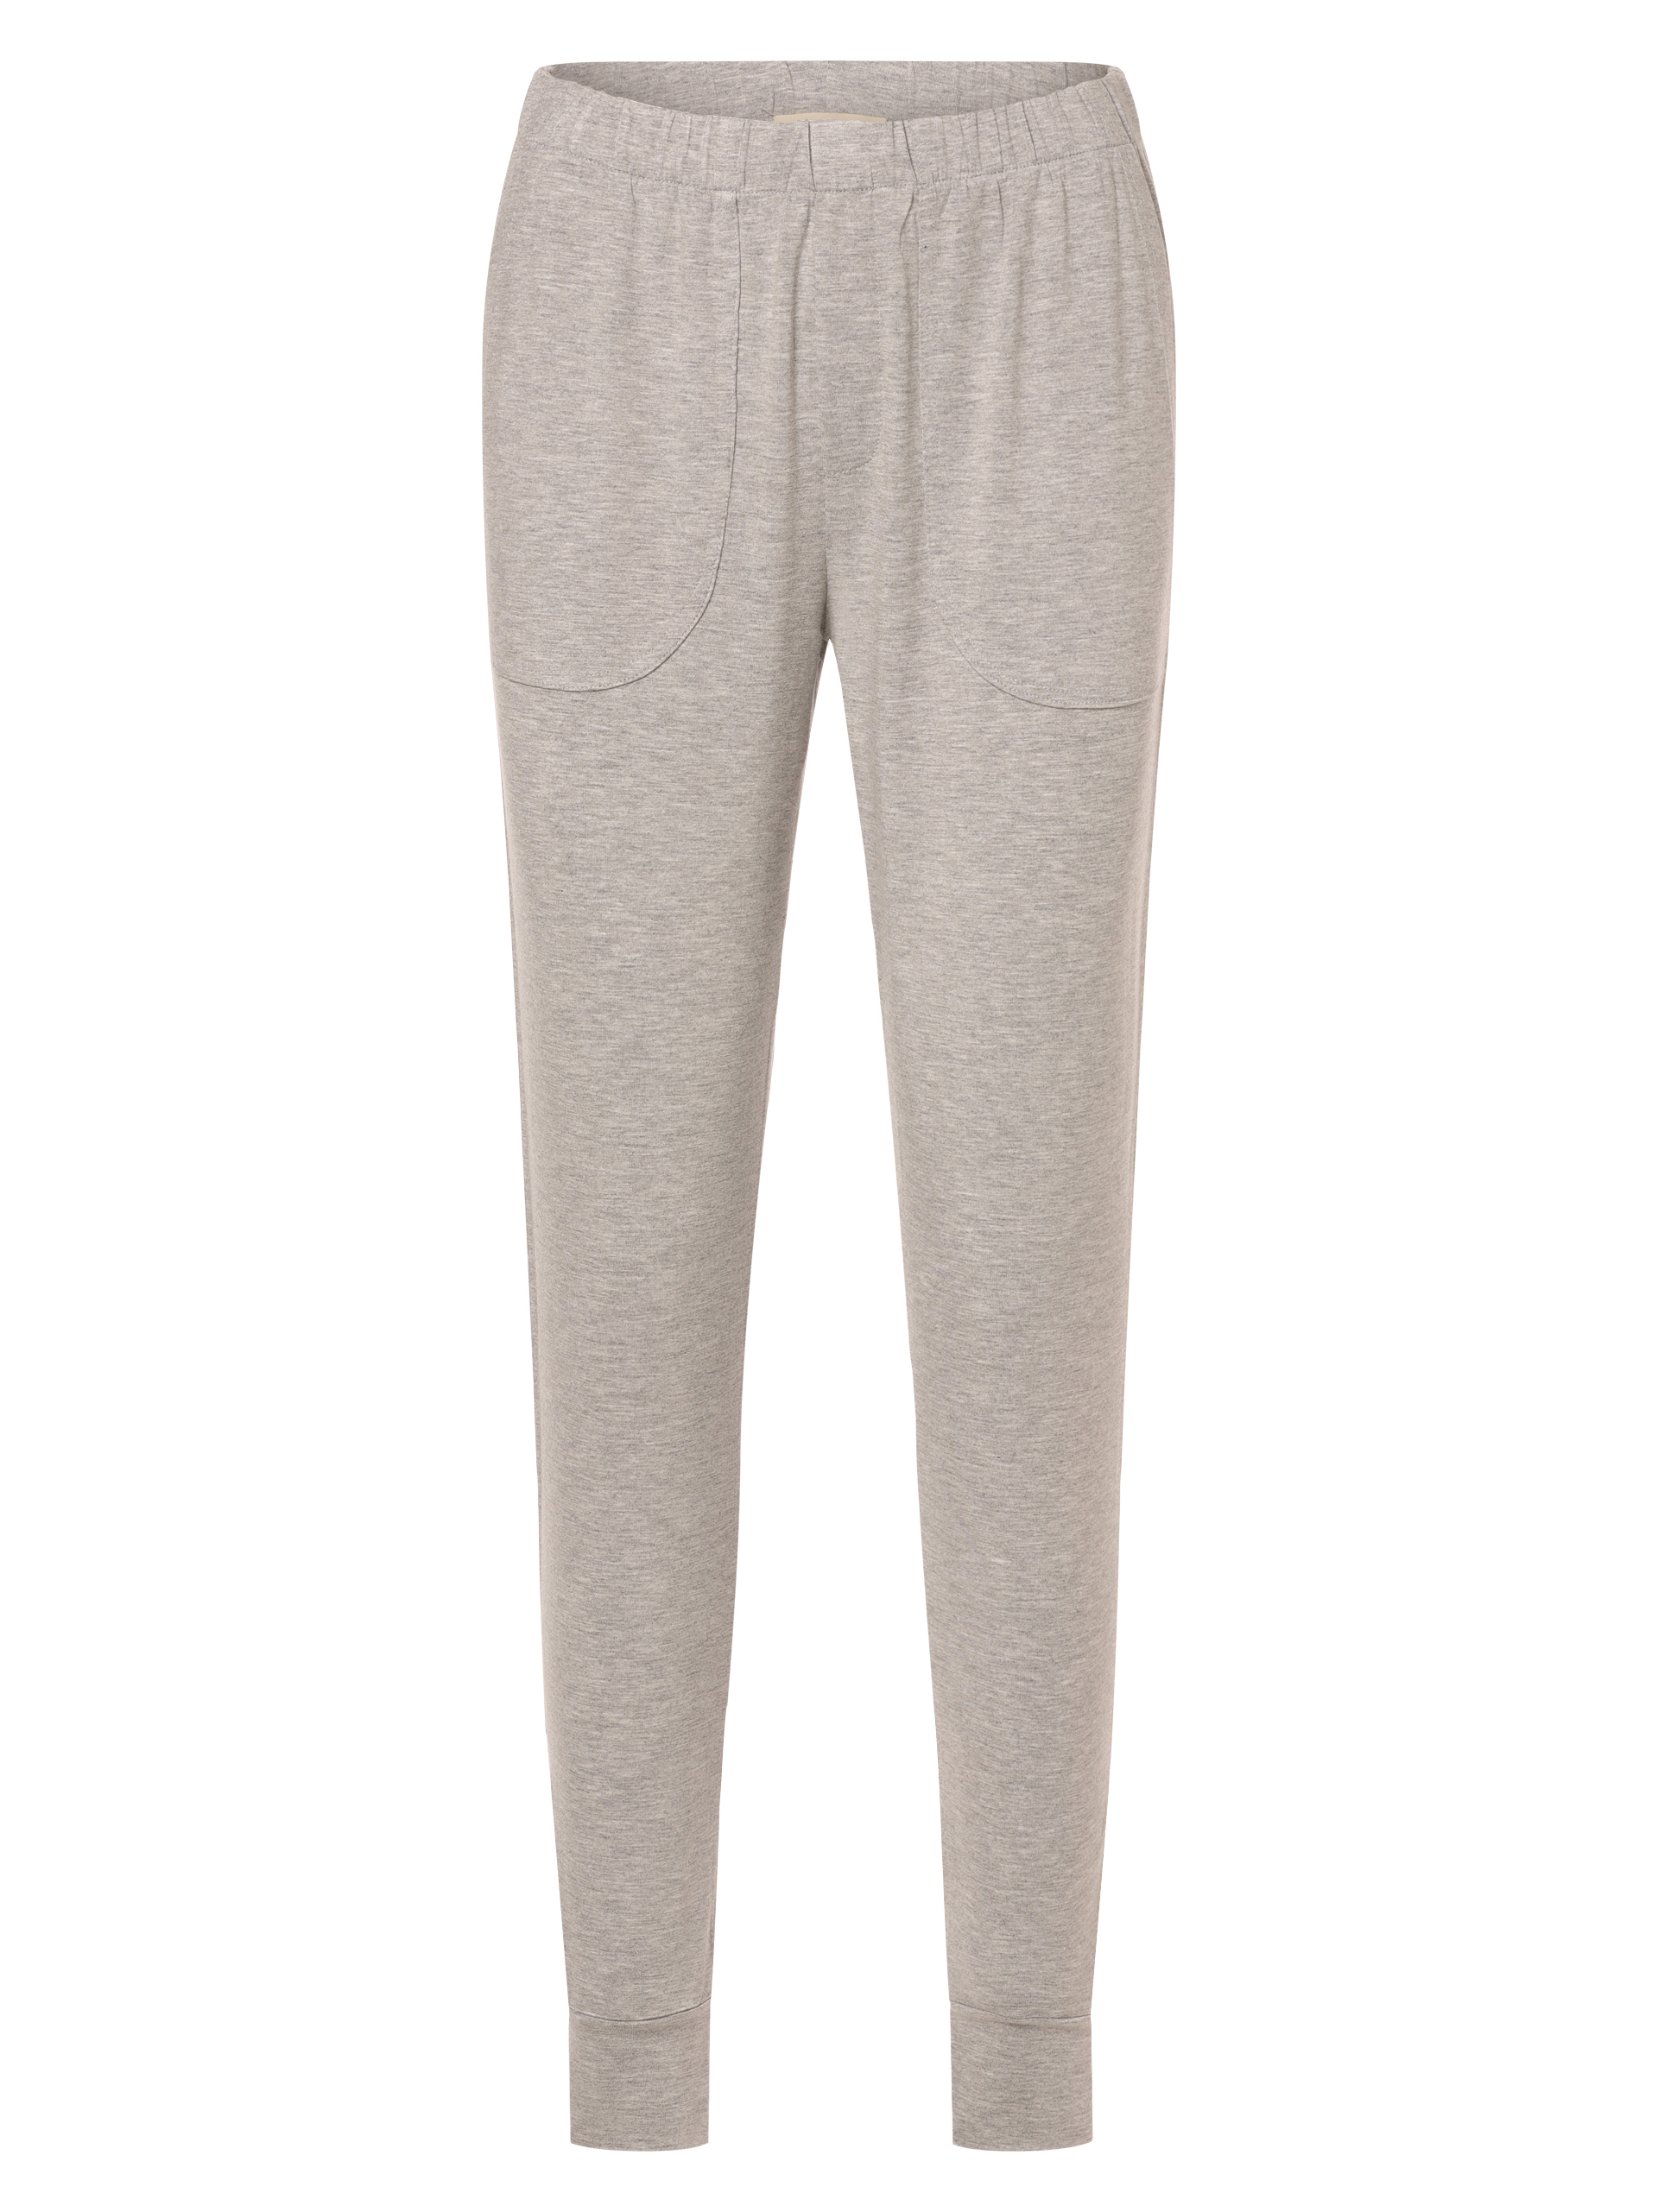 Пижамные брюки Marie Lund, светло-серый